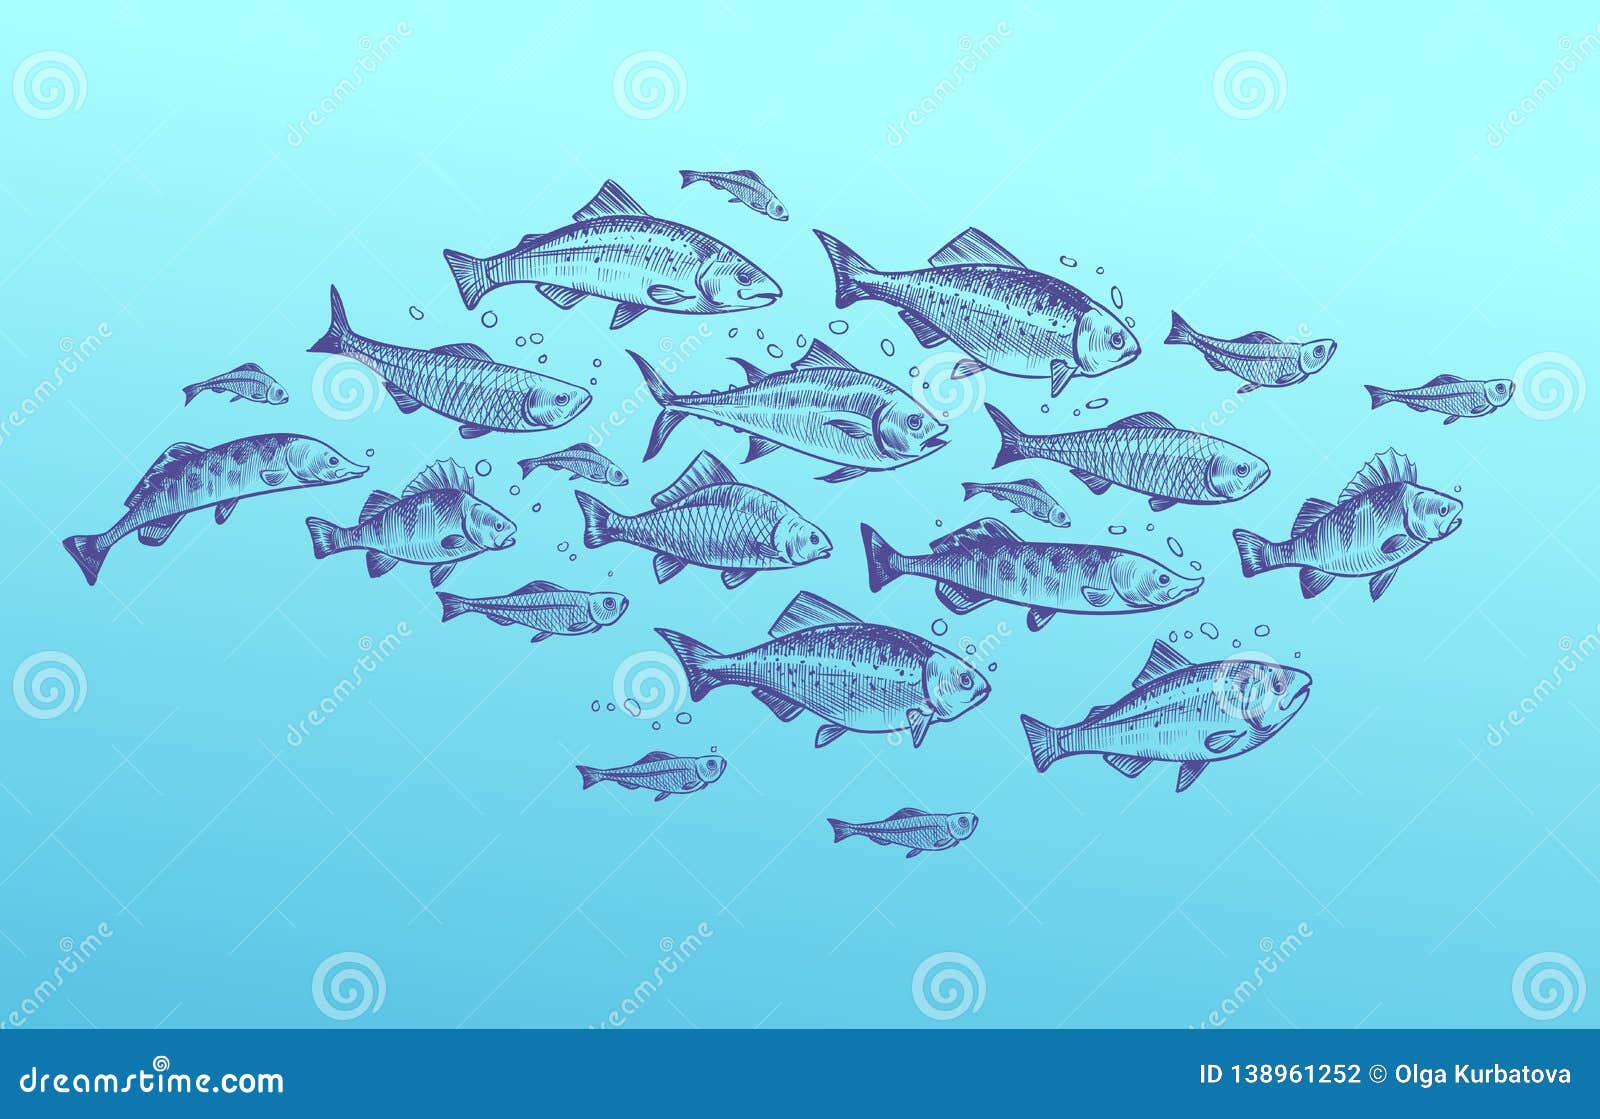 fish school. fishes group hand drawn sketch. restaurant delicacy seafood menu dorado mackerel tuna fresh food 